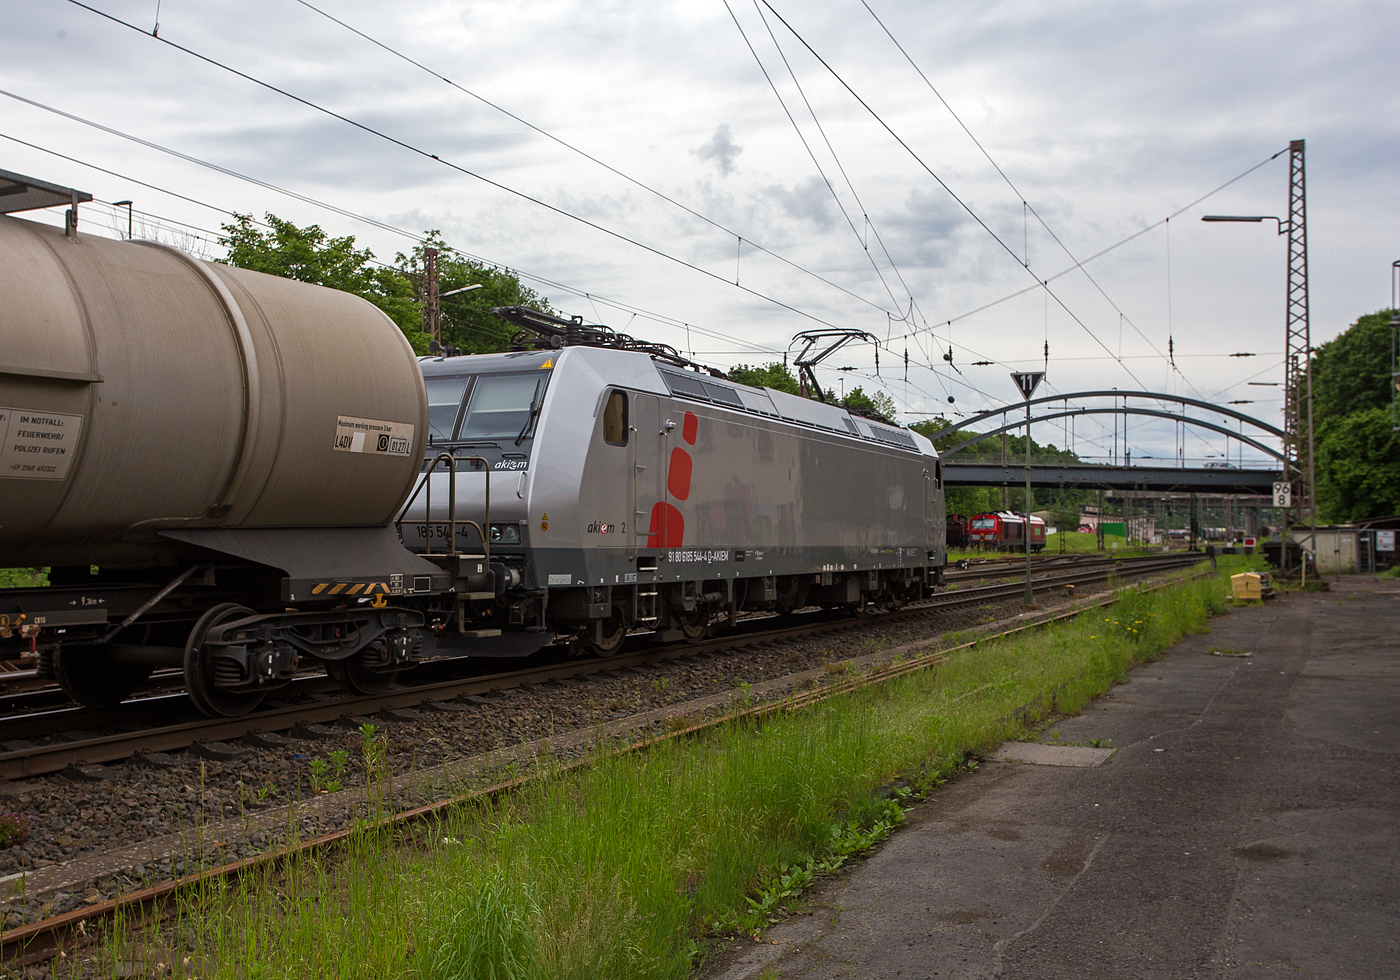 Die mit DACH-Zulassung (Deutschland, Österreich und Schweiz) an die DB Cargo AG vermietete Akiem 185 544-4 (91 80 6185 544-4 D-AKIEM), ex MRCE Dispolok (91 80 6185 544-4 D-DISPO), fährt am 21 Mai 2024 mit einem gemischten Güterzug von Kreuztal weiter in südlicher Richtung. Zuvor hatte sie beim Bahnhof Kreuztal länger Hp 0.

Nochmals einen lieben Gruß an den netten Lokführer zurück.

Die TRAXX F140 AC1 wurde 2005 von Bombardier Transportation GmbH in Kassel unter der Fabriknummer 33729 gebaut und an die MRCE - Mitsui Rail Capital Europe geliefert. An die AKIEM SAS wurde sie 2023 verkauft. Sie hat die Zulassungen für Deutschland, Österreich und die Schweiz (D/A/CH), die zugel. Höchstgeschwindigkeit beträgt 140 km/h. 
